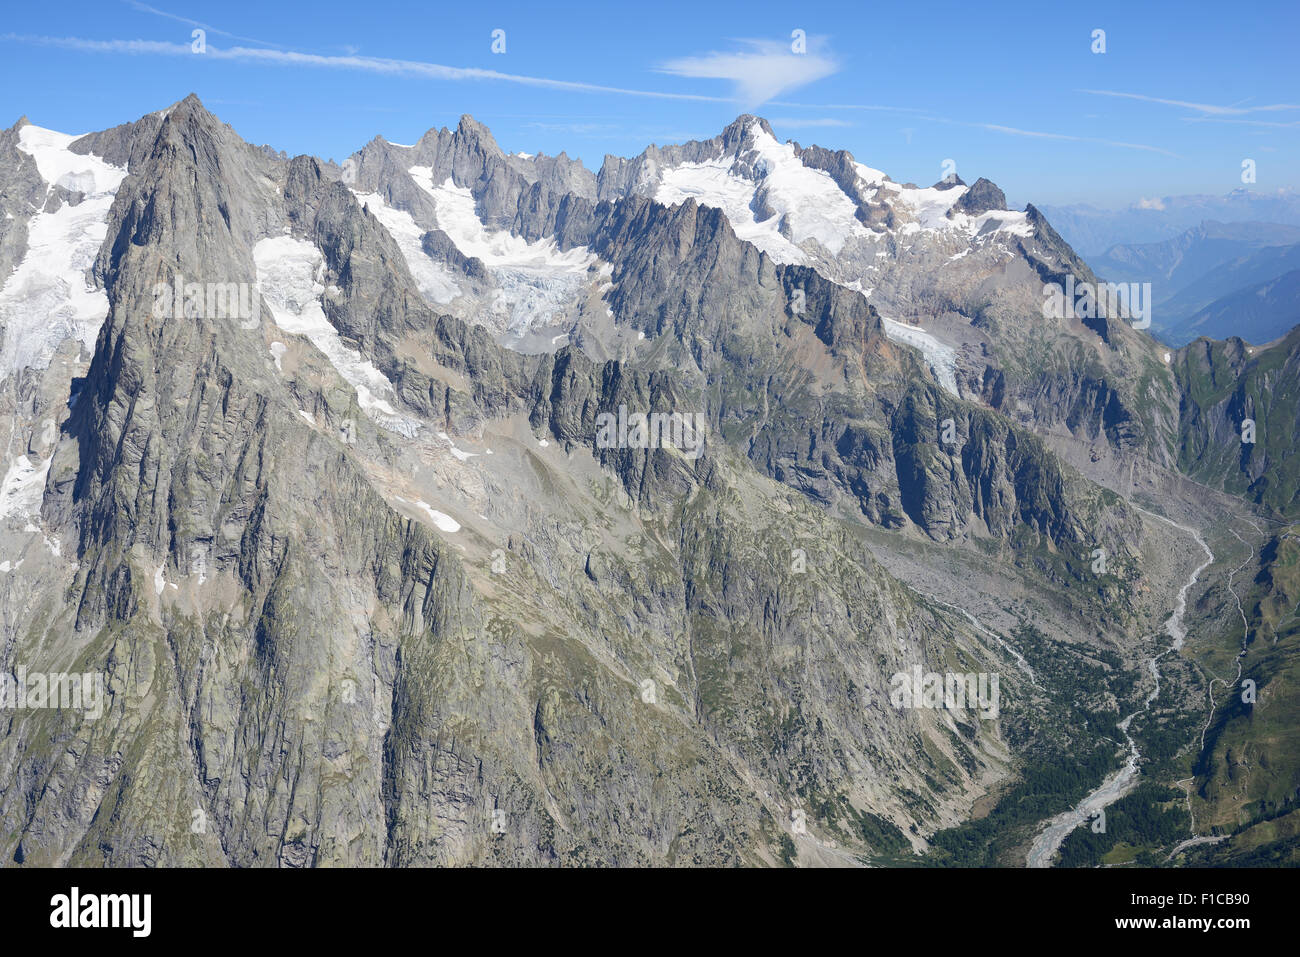 VUE AÉRIENNE.Aiguille de Leschaux (à gauche, altitude : 3859m) et Mont Dolent (à droite, altitude : 3820m).Val Ferret, Courmayeur, Vallée d'Aoste, Italie. Banque D'Images